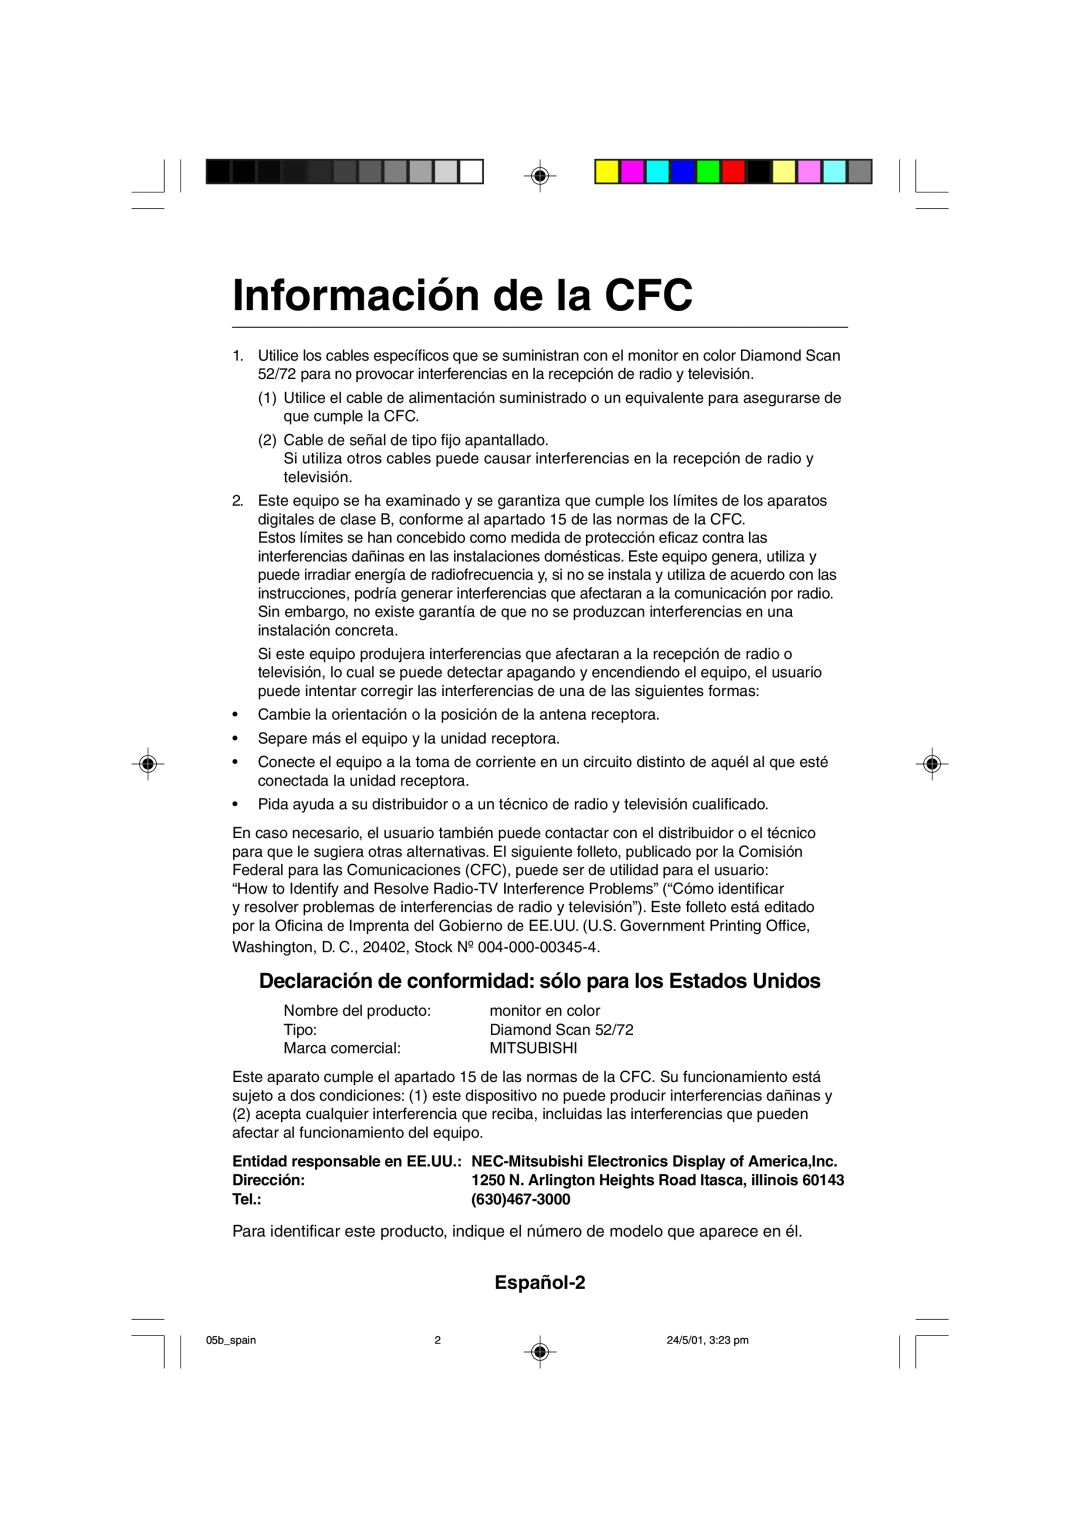 Mitsubishi Electronics M557 Información de la CFC, Declaración de conformidad sólo para los Estados Unidos, Dirección 